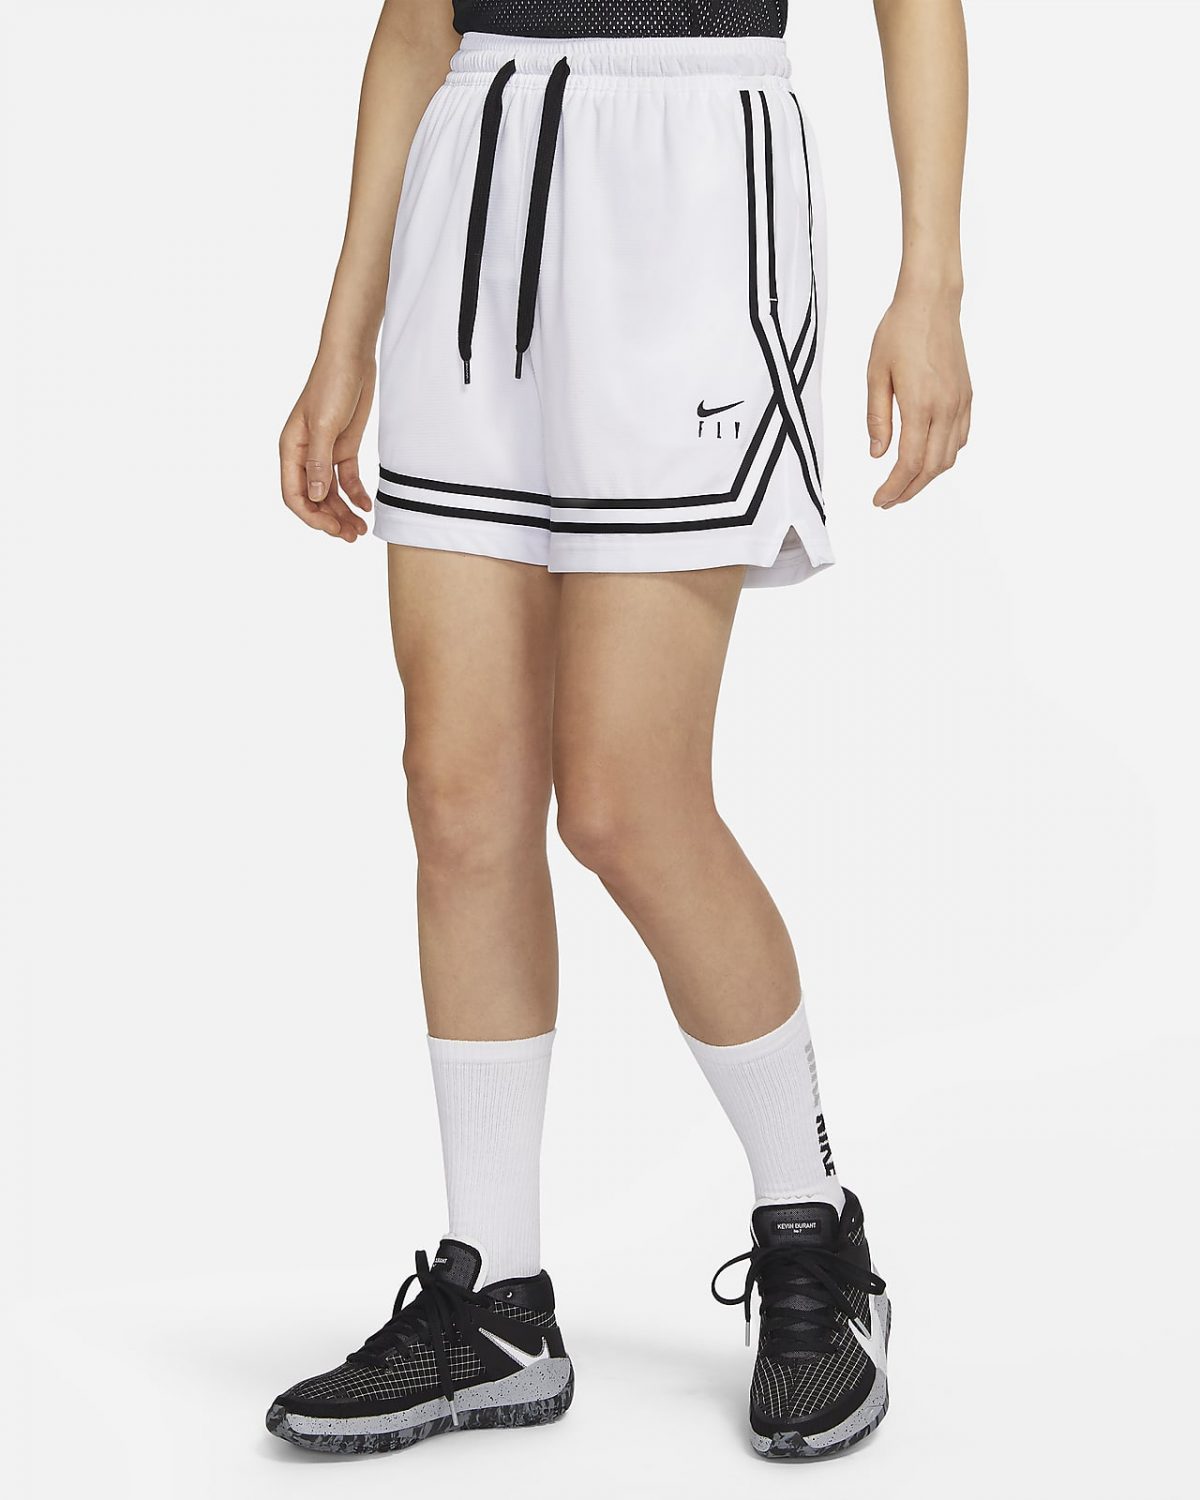 Женские шорты Nike Fly Crossover фото